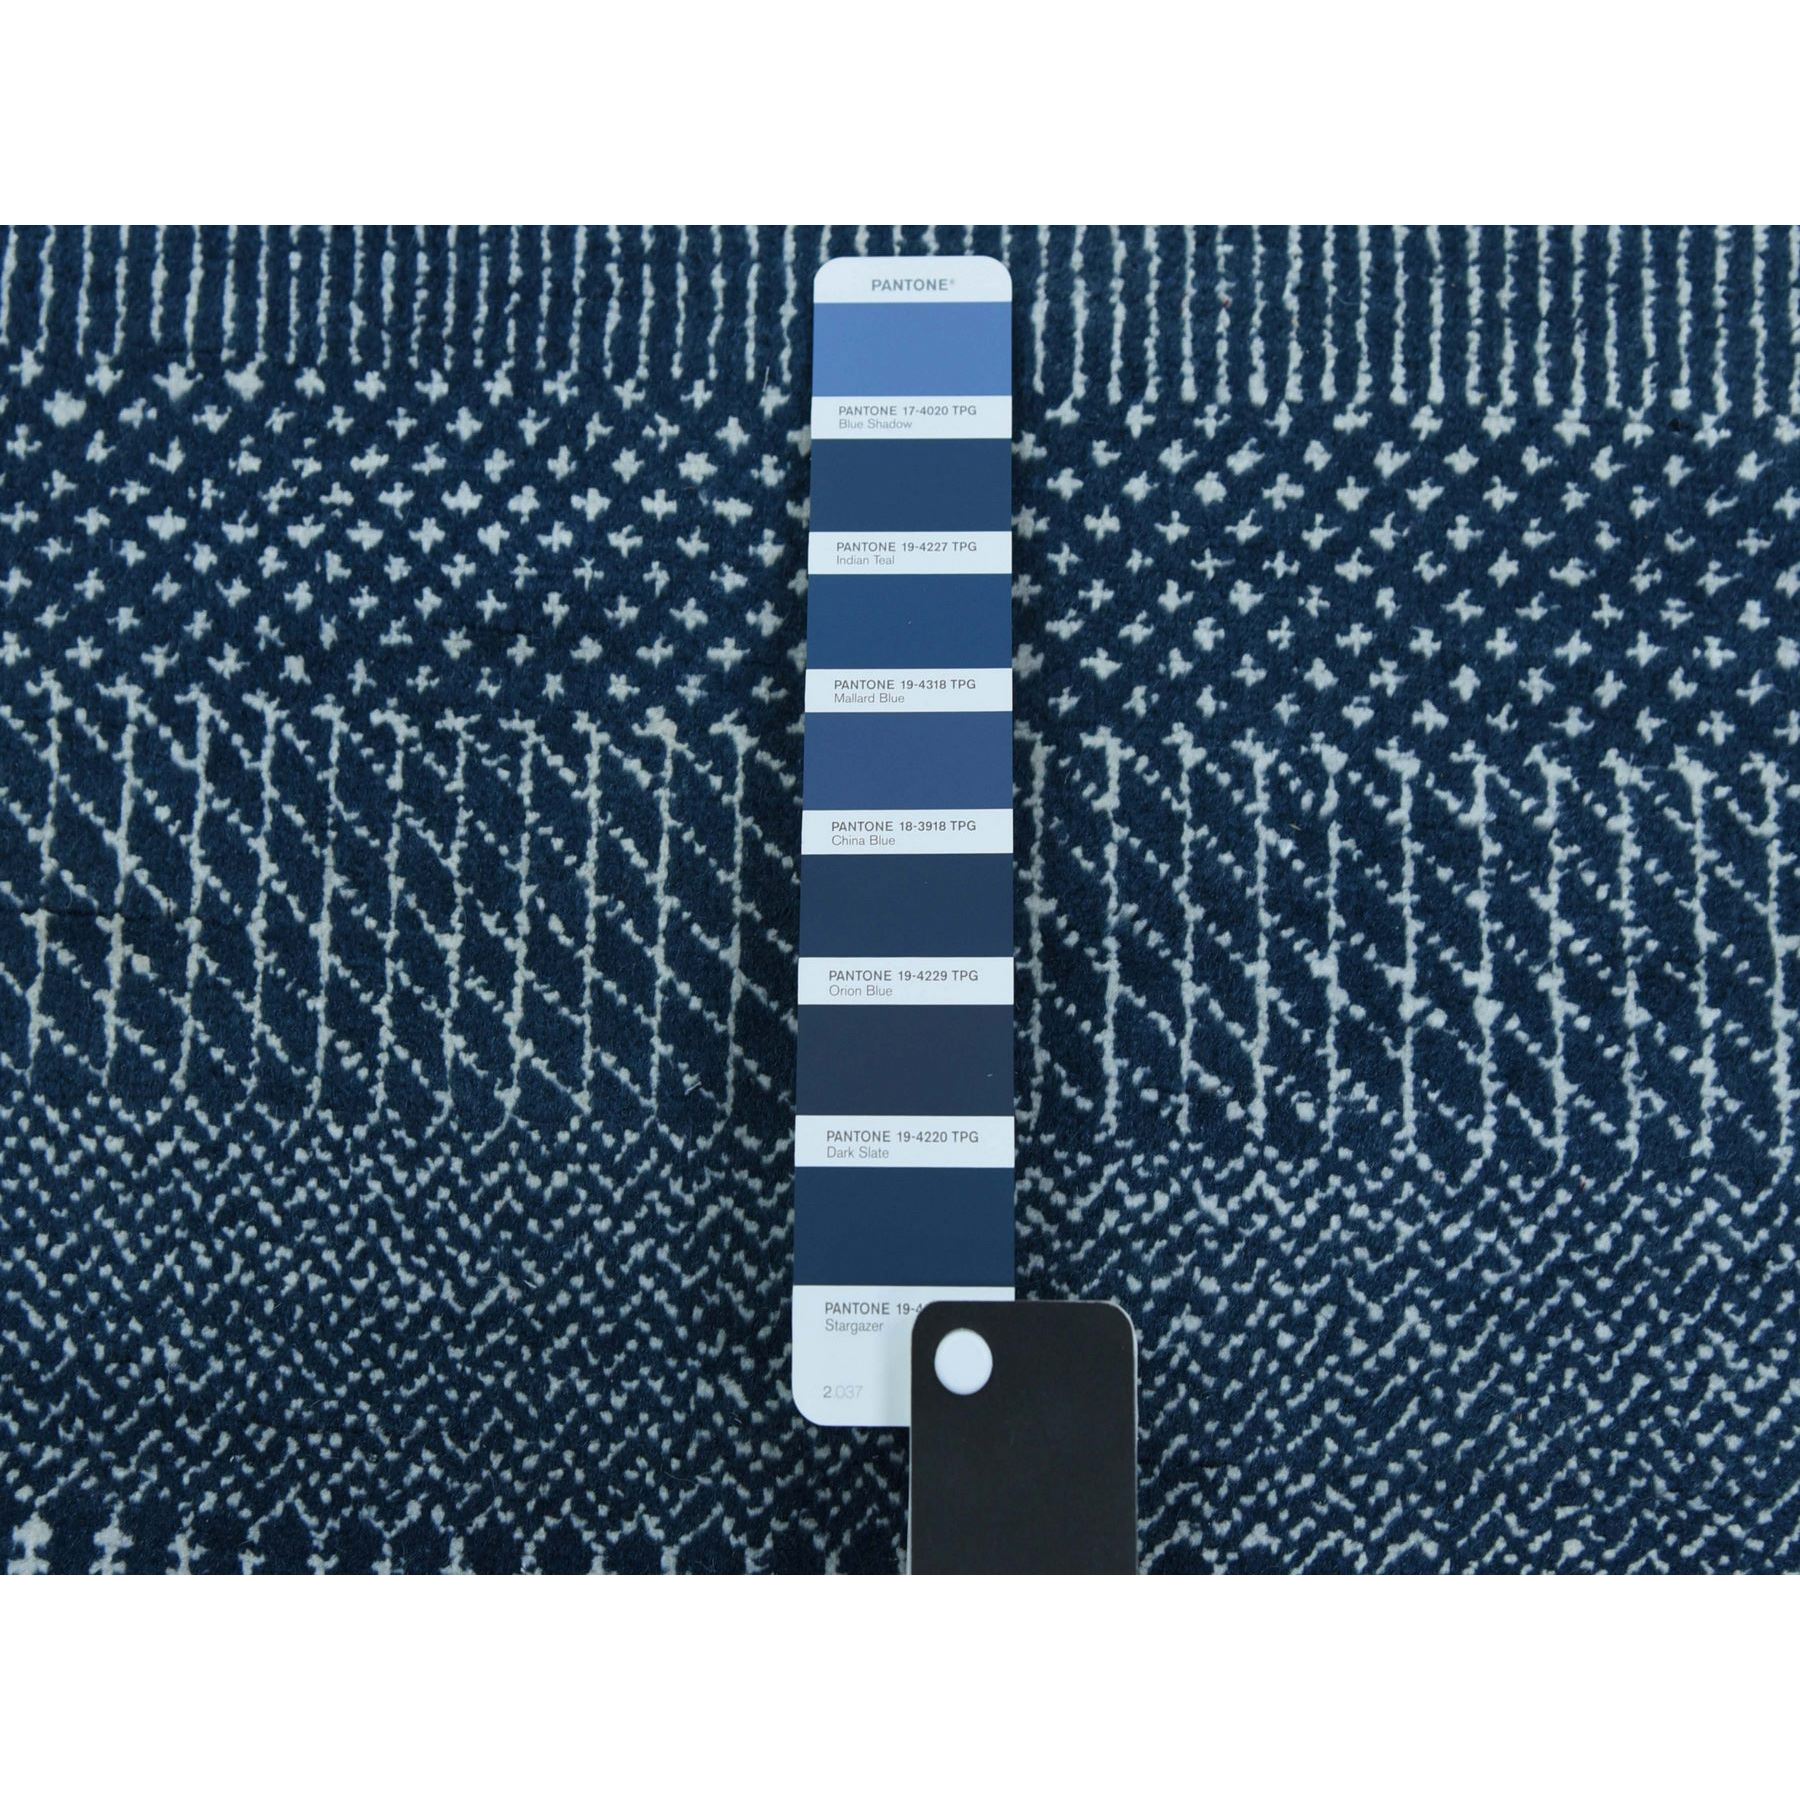 4'1"x6'1" Teal Blue, Densely Woven Wool and Silk Hand Woven, Modern Grass Design Gabbeh, Oriental Rug 